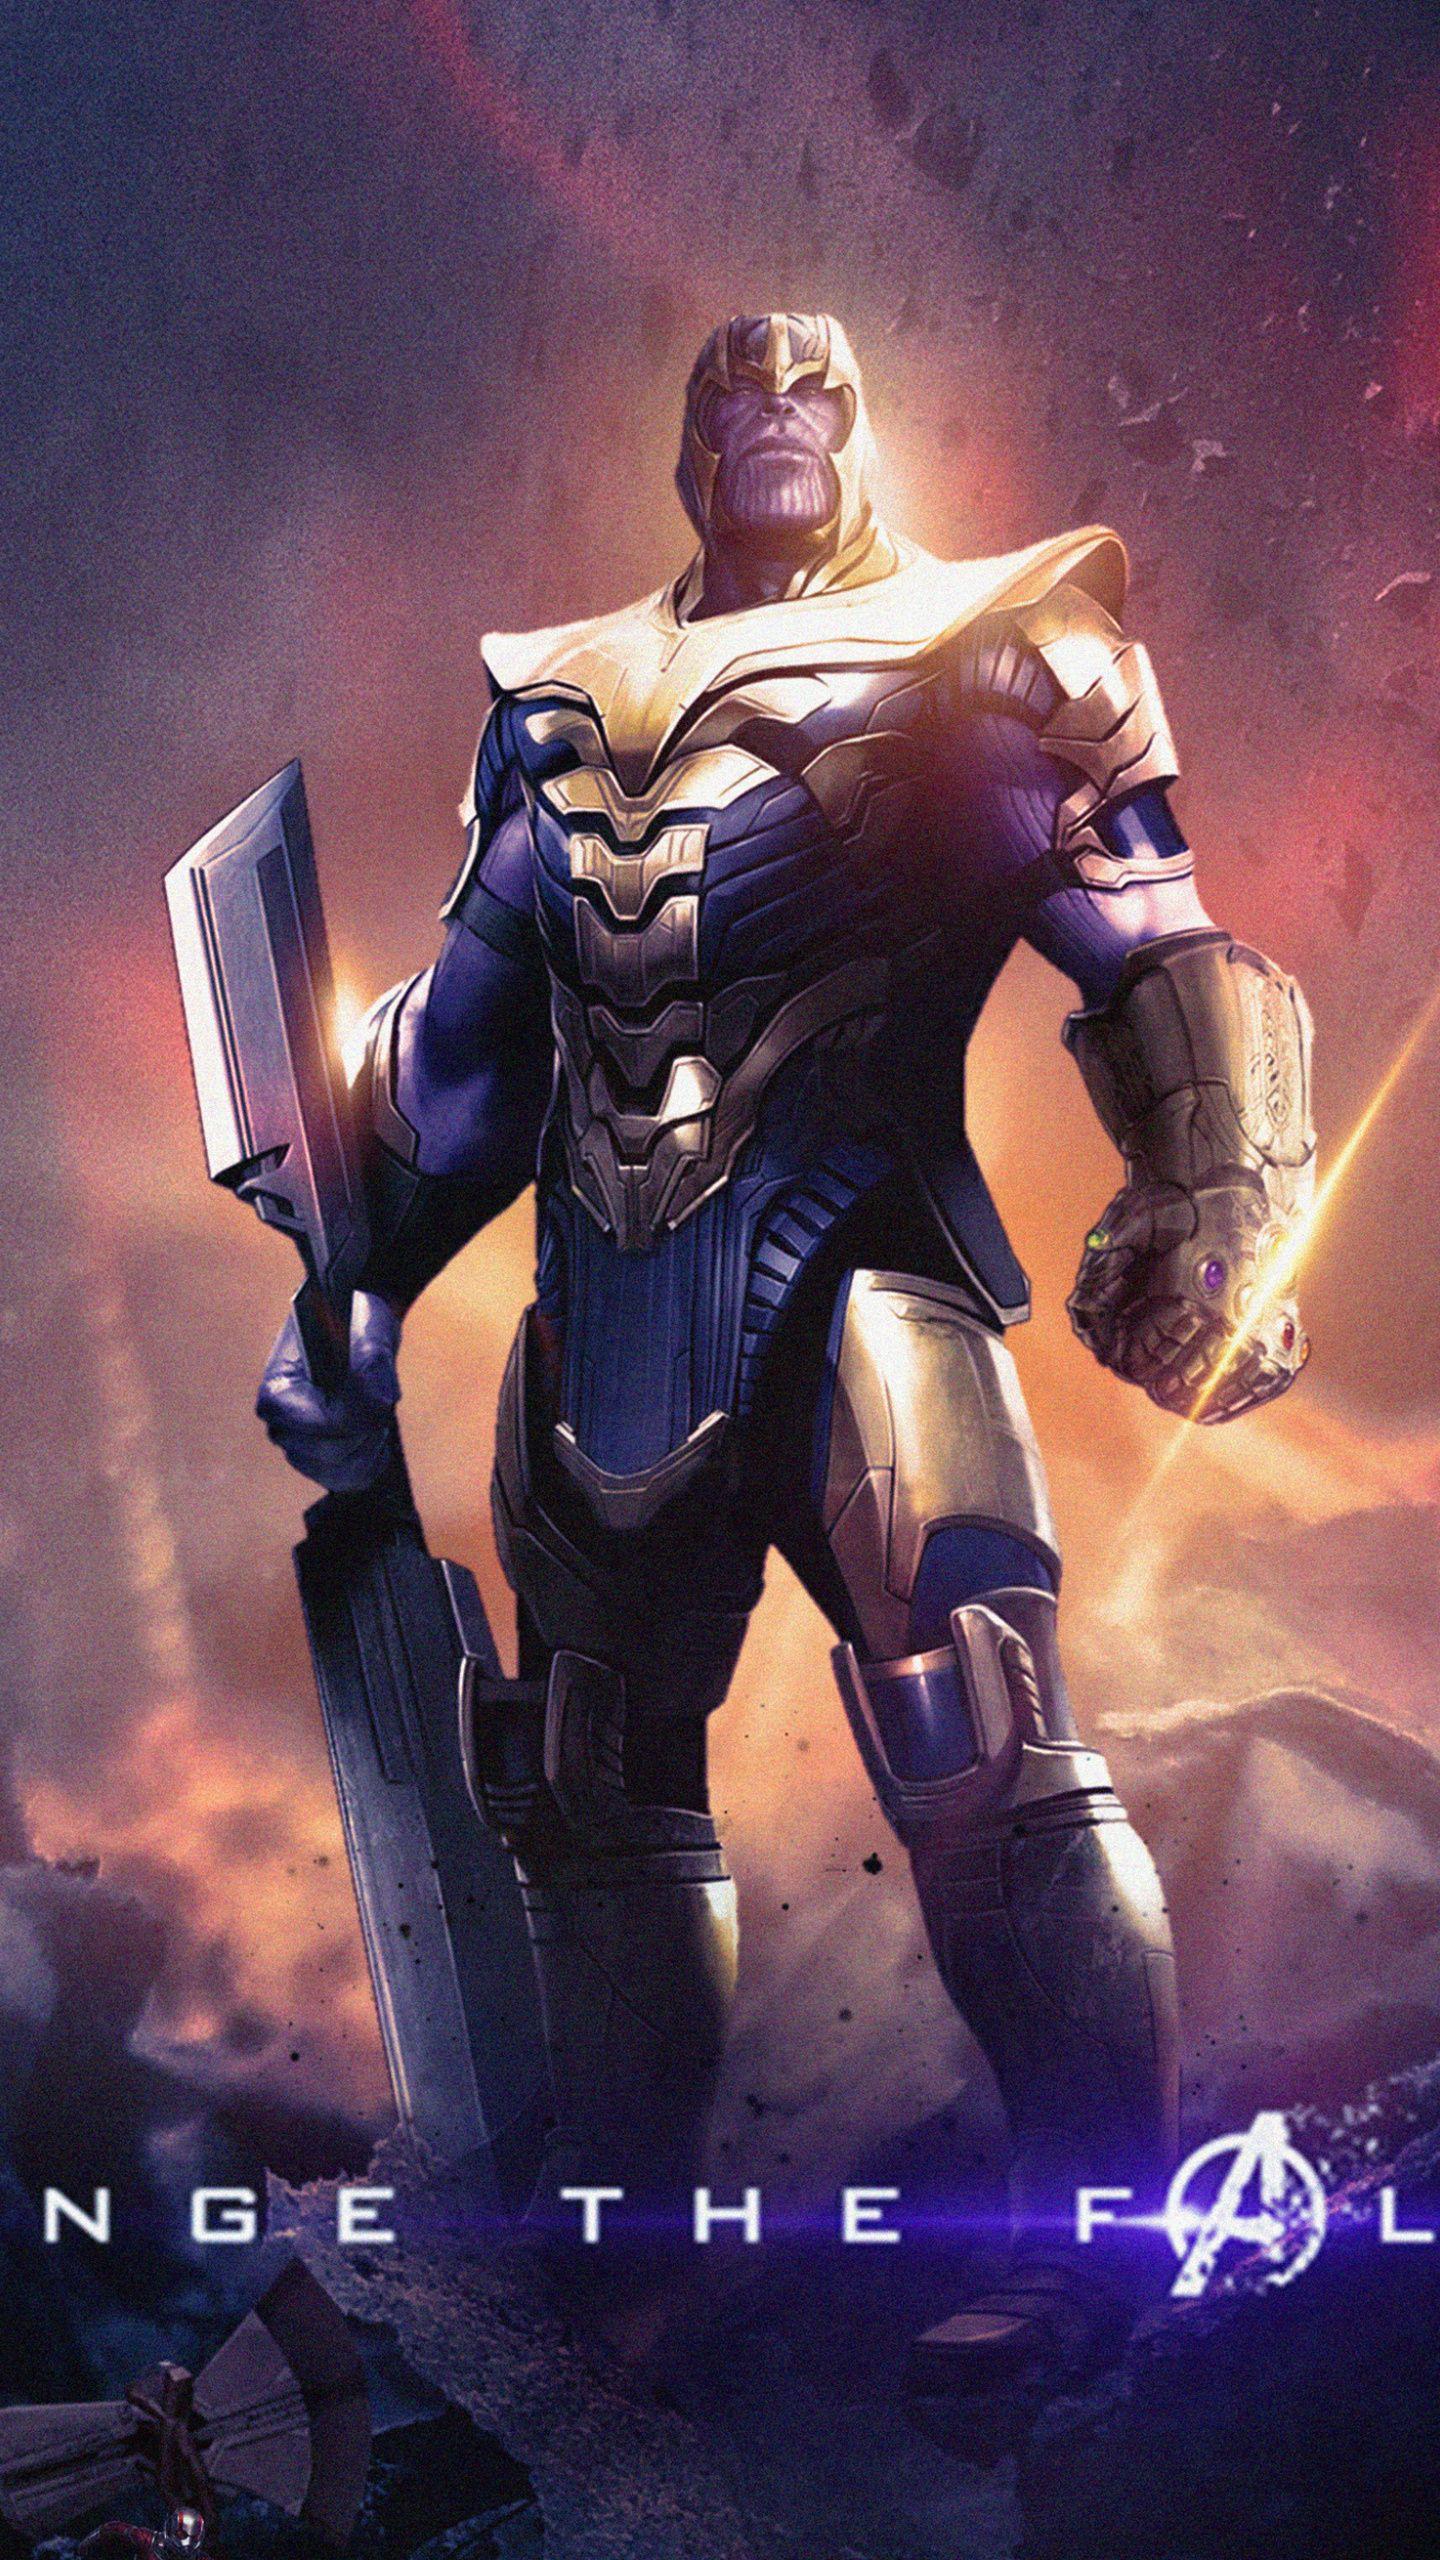 Thanos, Avengers: Endgame, villain wallpaper,. Marvel superhero posters, Marvel villains, Marvel superheroes